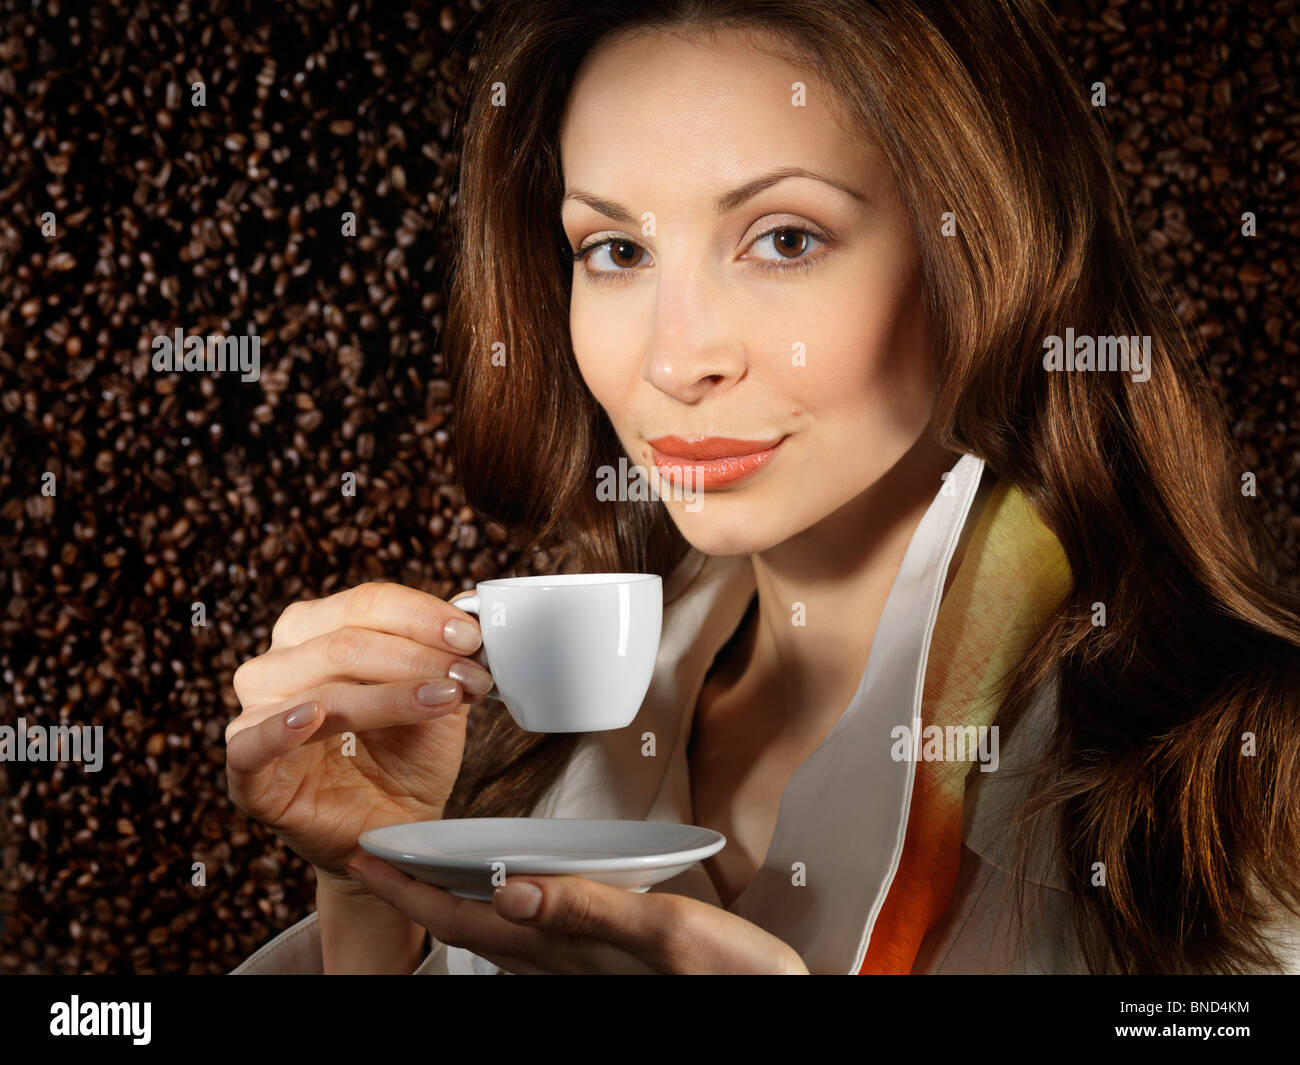 Belle Jeune femme tenant une tasse de café avec café en grains derrière elle en arrière-plan Banque D'Images